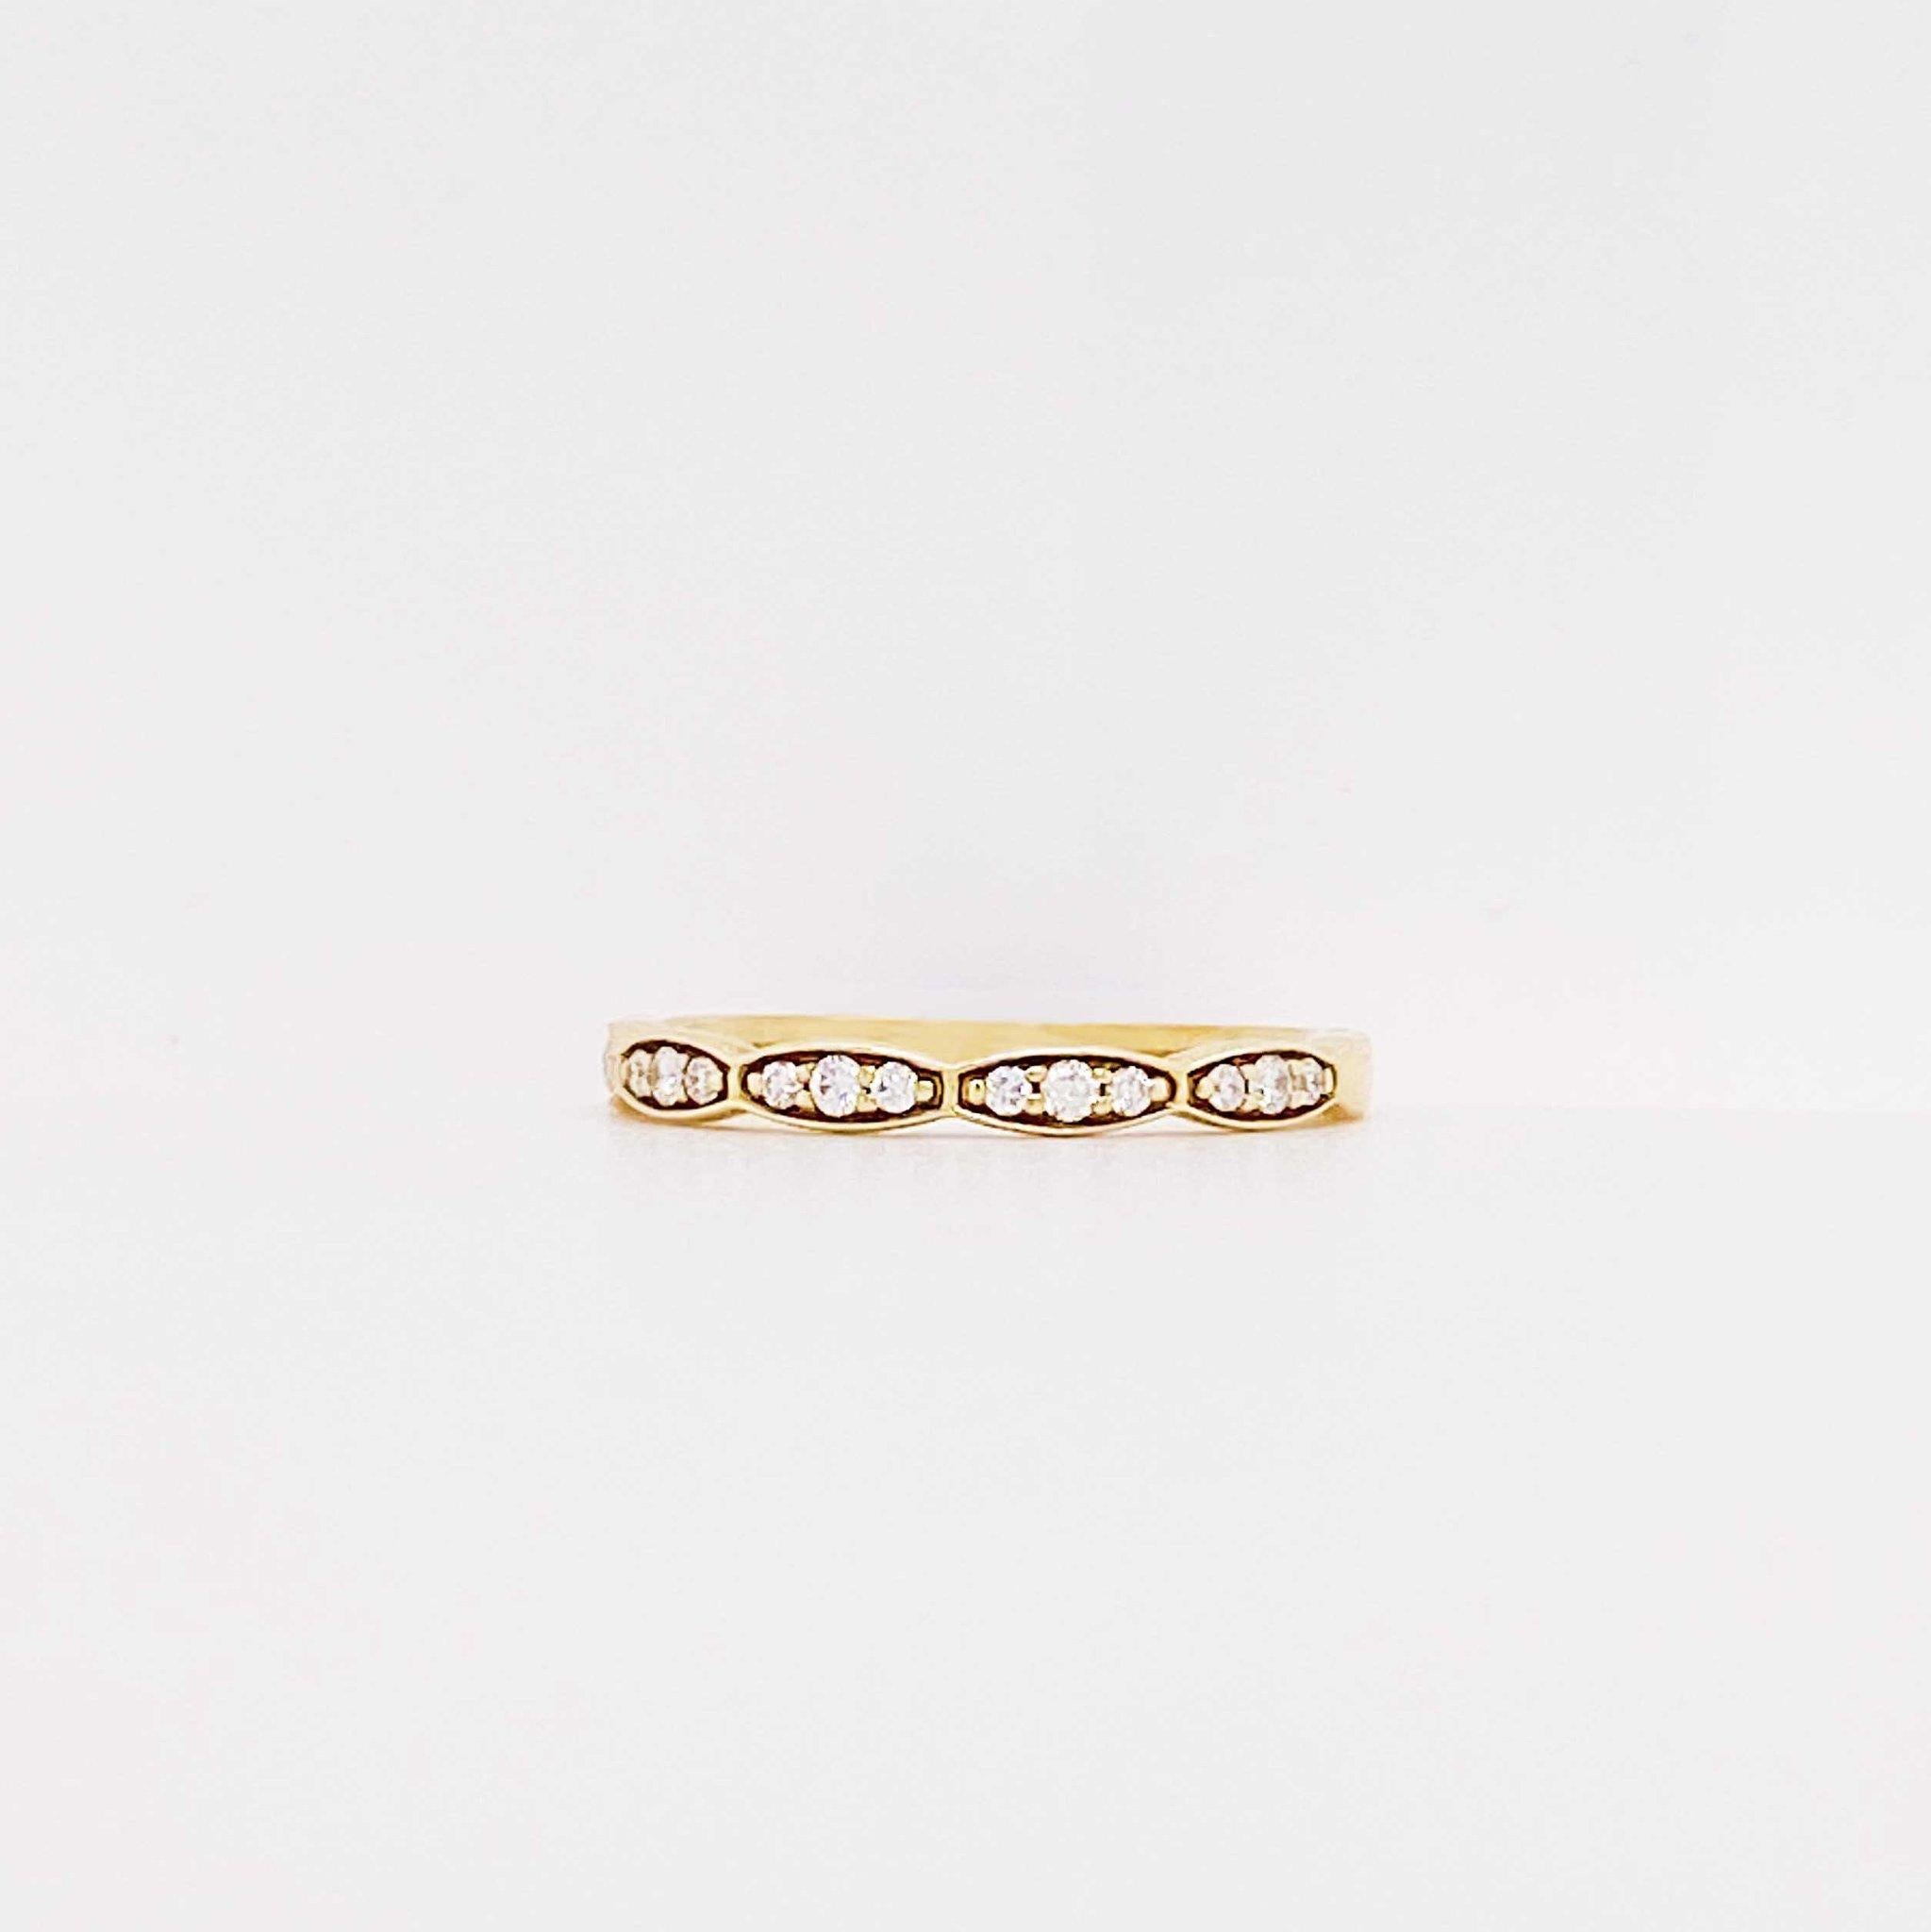 Das Diamantband mit Jakobsmuschel ist ein modernes Design mit echten runden Brillanten, die in 14 Karat Gelbgold gefasst sind. Dieses Diamantband hat ein gewelltes Profil, das an Tacori erinnert. Der Diamantring ist vielseitig und kann mit fast